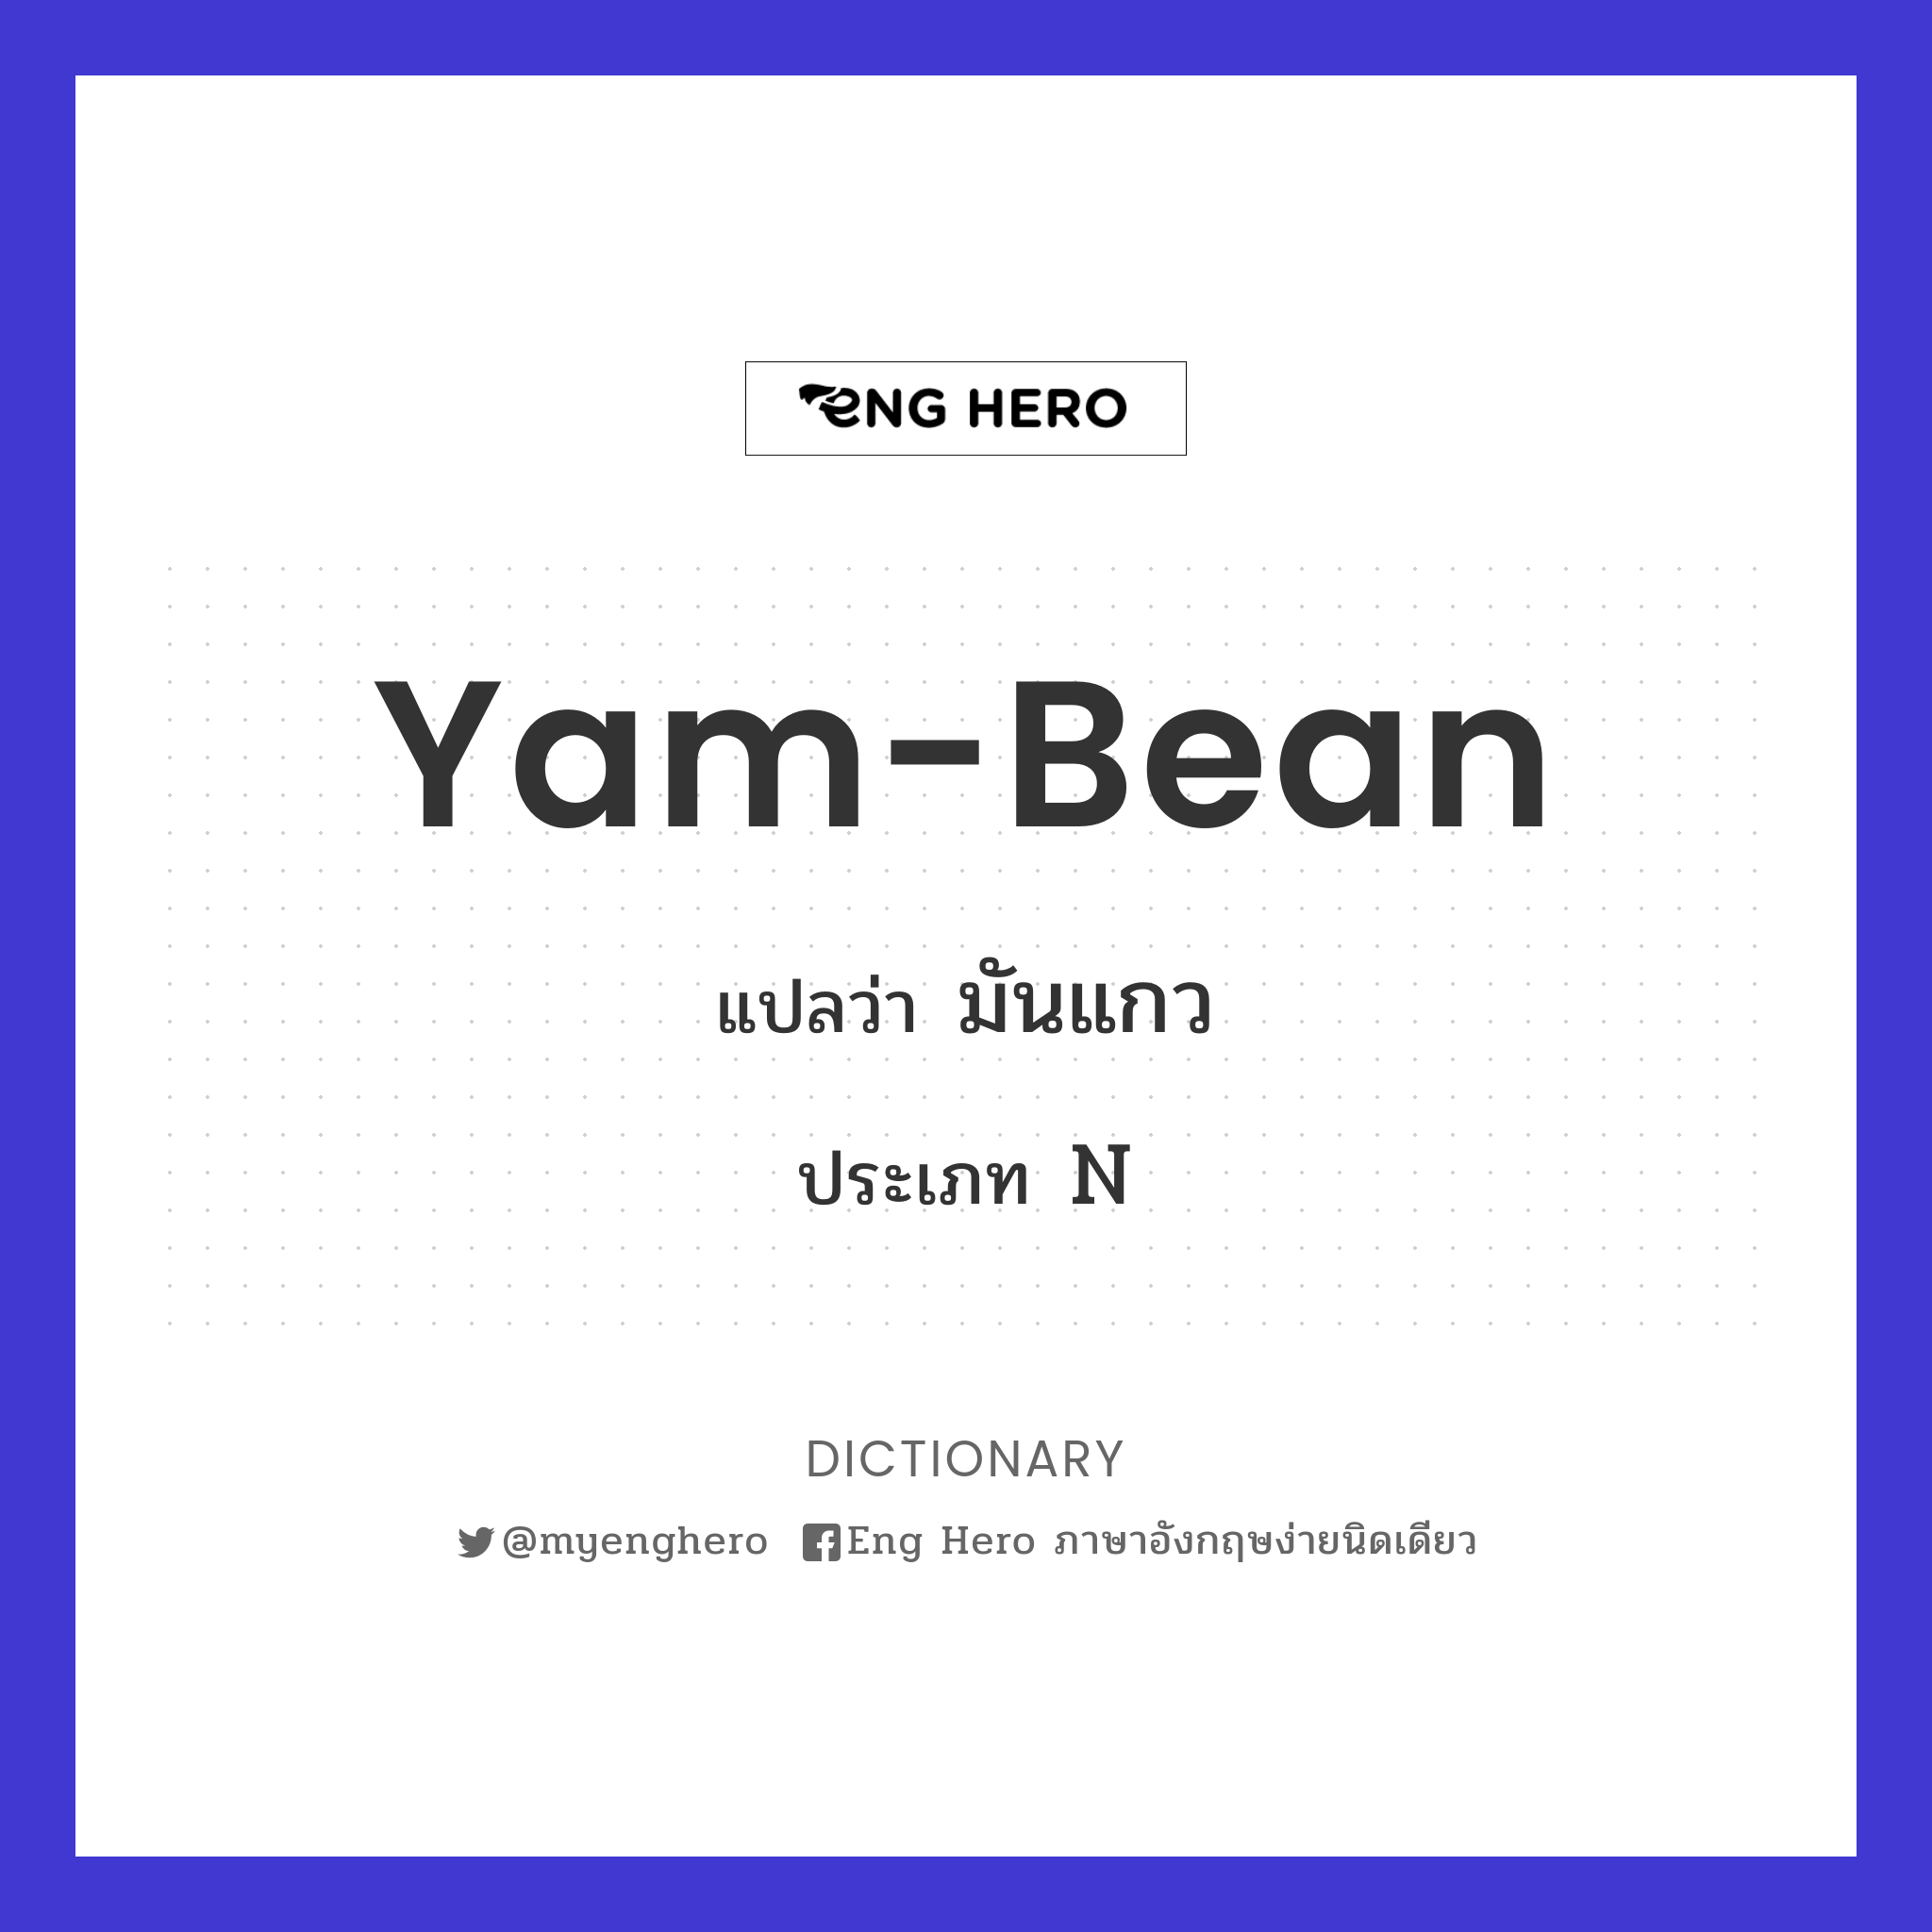 yam-bean